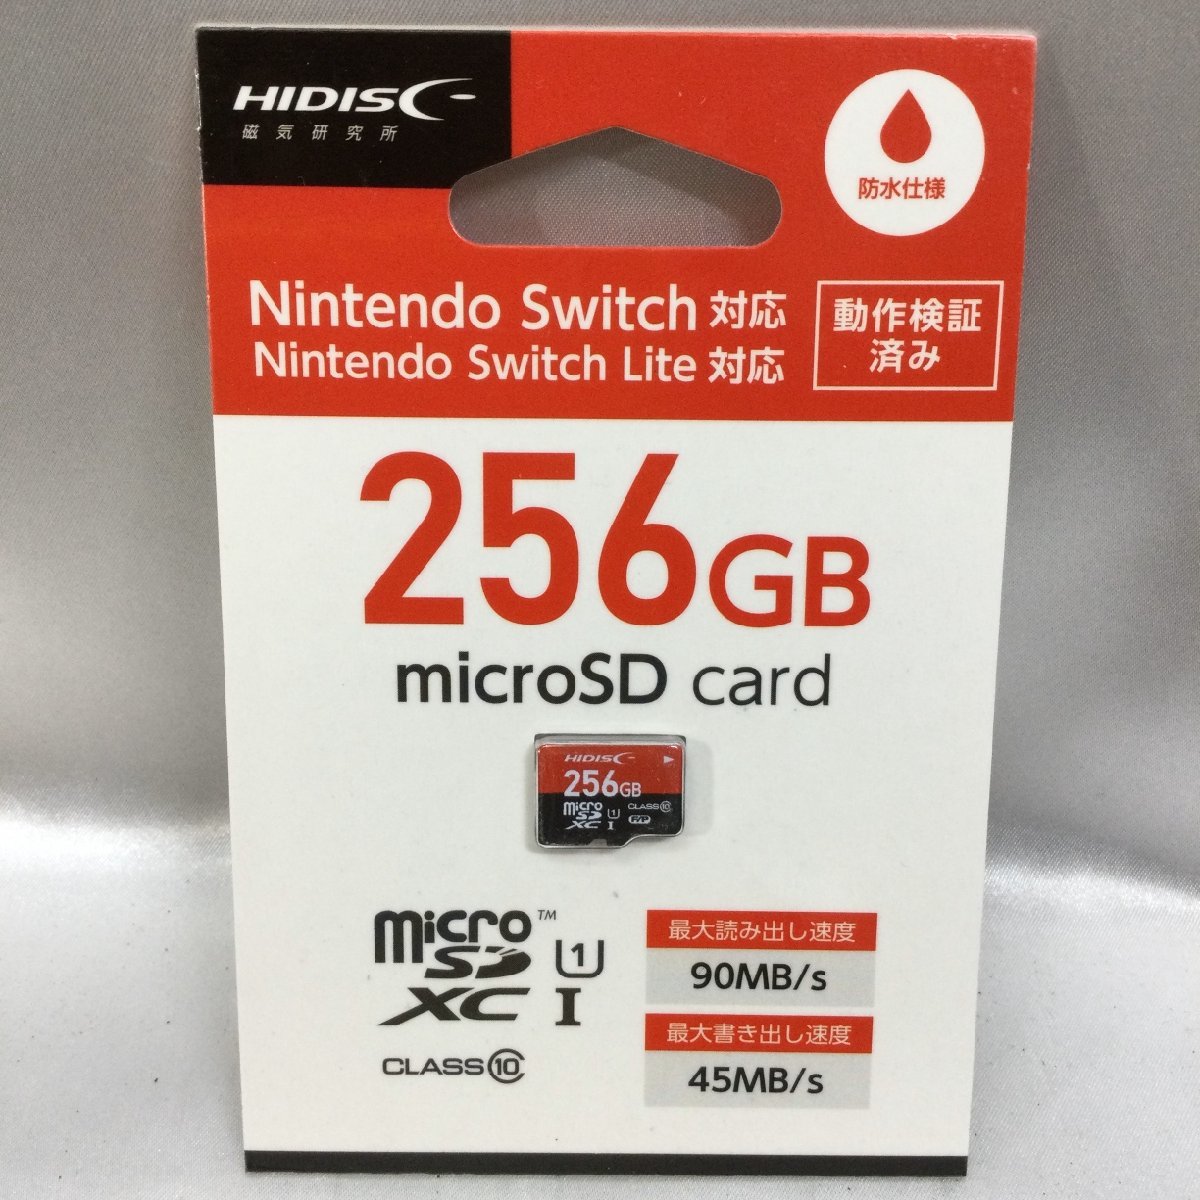 [ не использовался / in voice регистрация магазин /TO]HIDISC Nintendo Switch Nintendo переключатель соответствует 256GB HDMCSDX256GSW micro SDXC карта MZ0228/0008-10